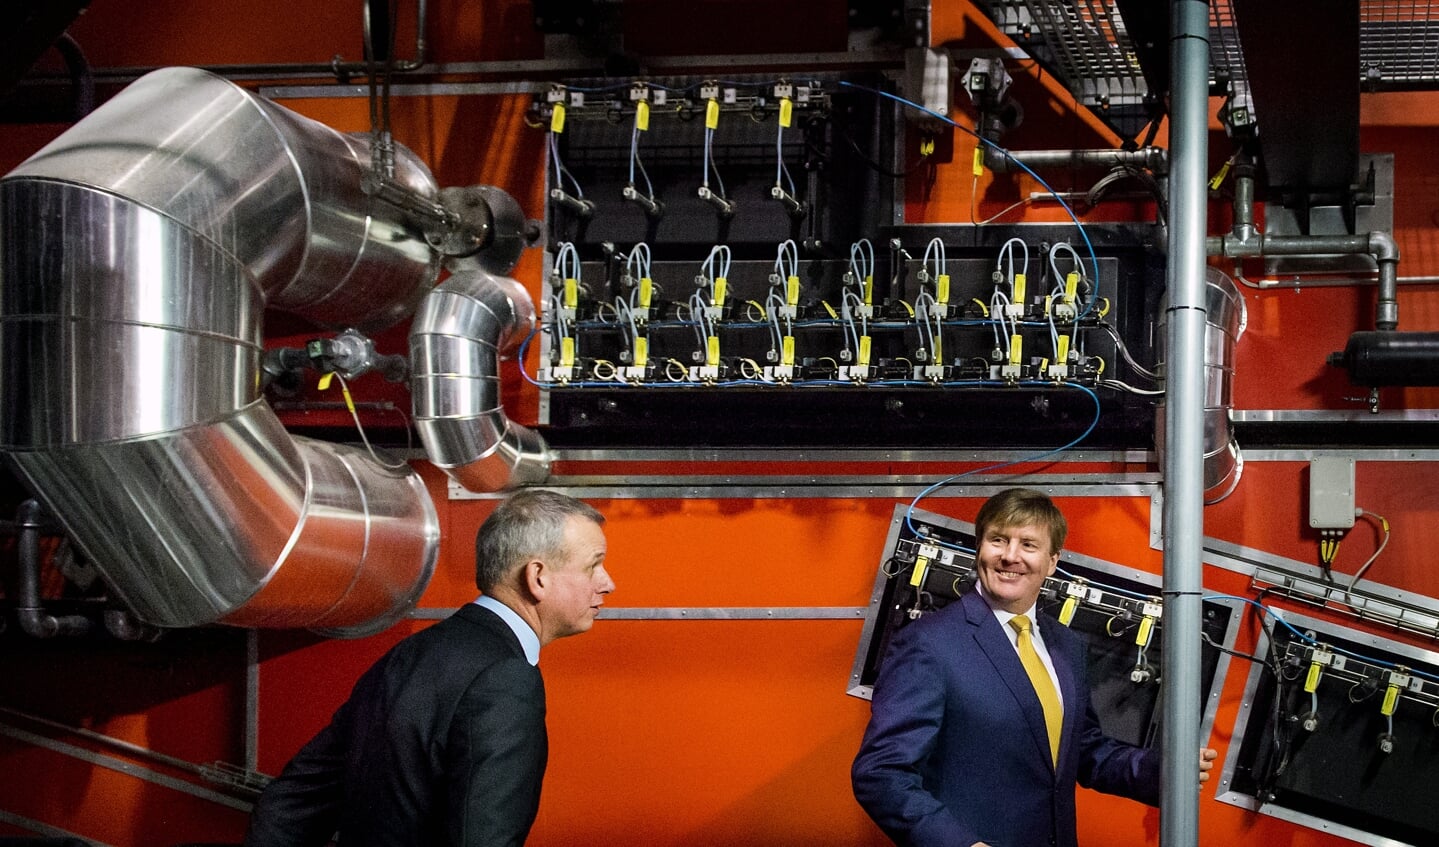 Koning Willem-Alexander woonde in 2015 de opening van een BioWarmteCentrale in Purmerend bij. De centrale is de groene stroomleverancier voor de Stadsverwarming Purmerend (SVP), die 25.000 klanten telt.